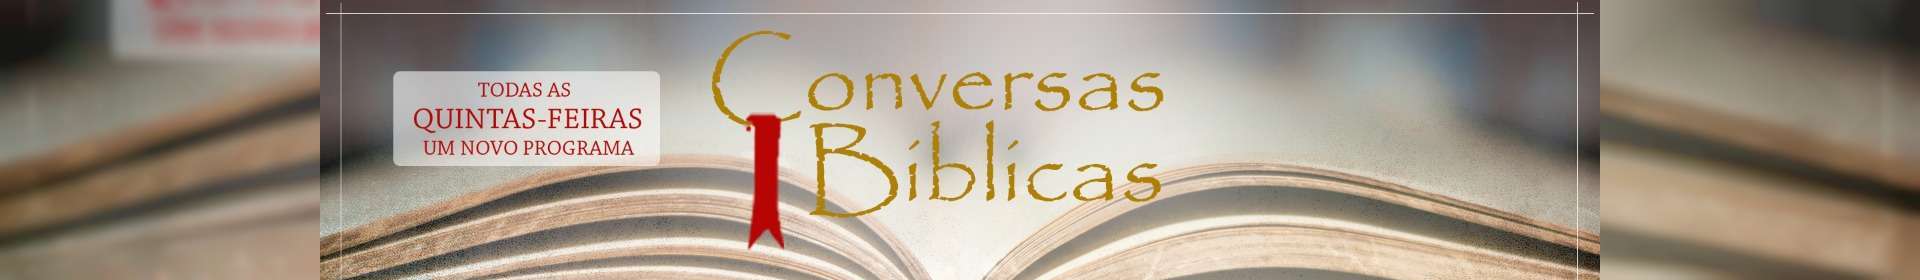 Conversas Bíblicas: Pecado Original - Parte 2